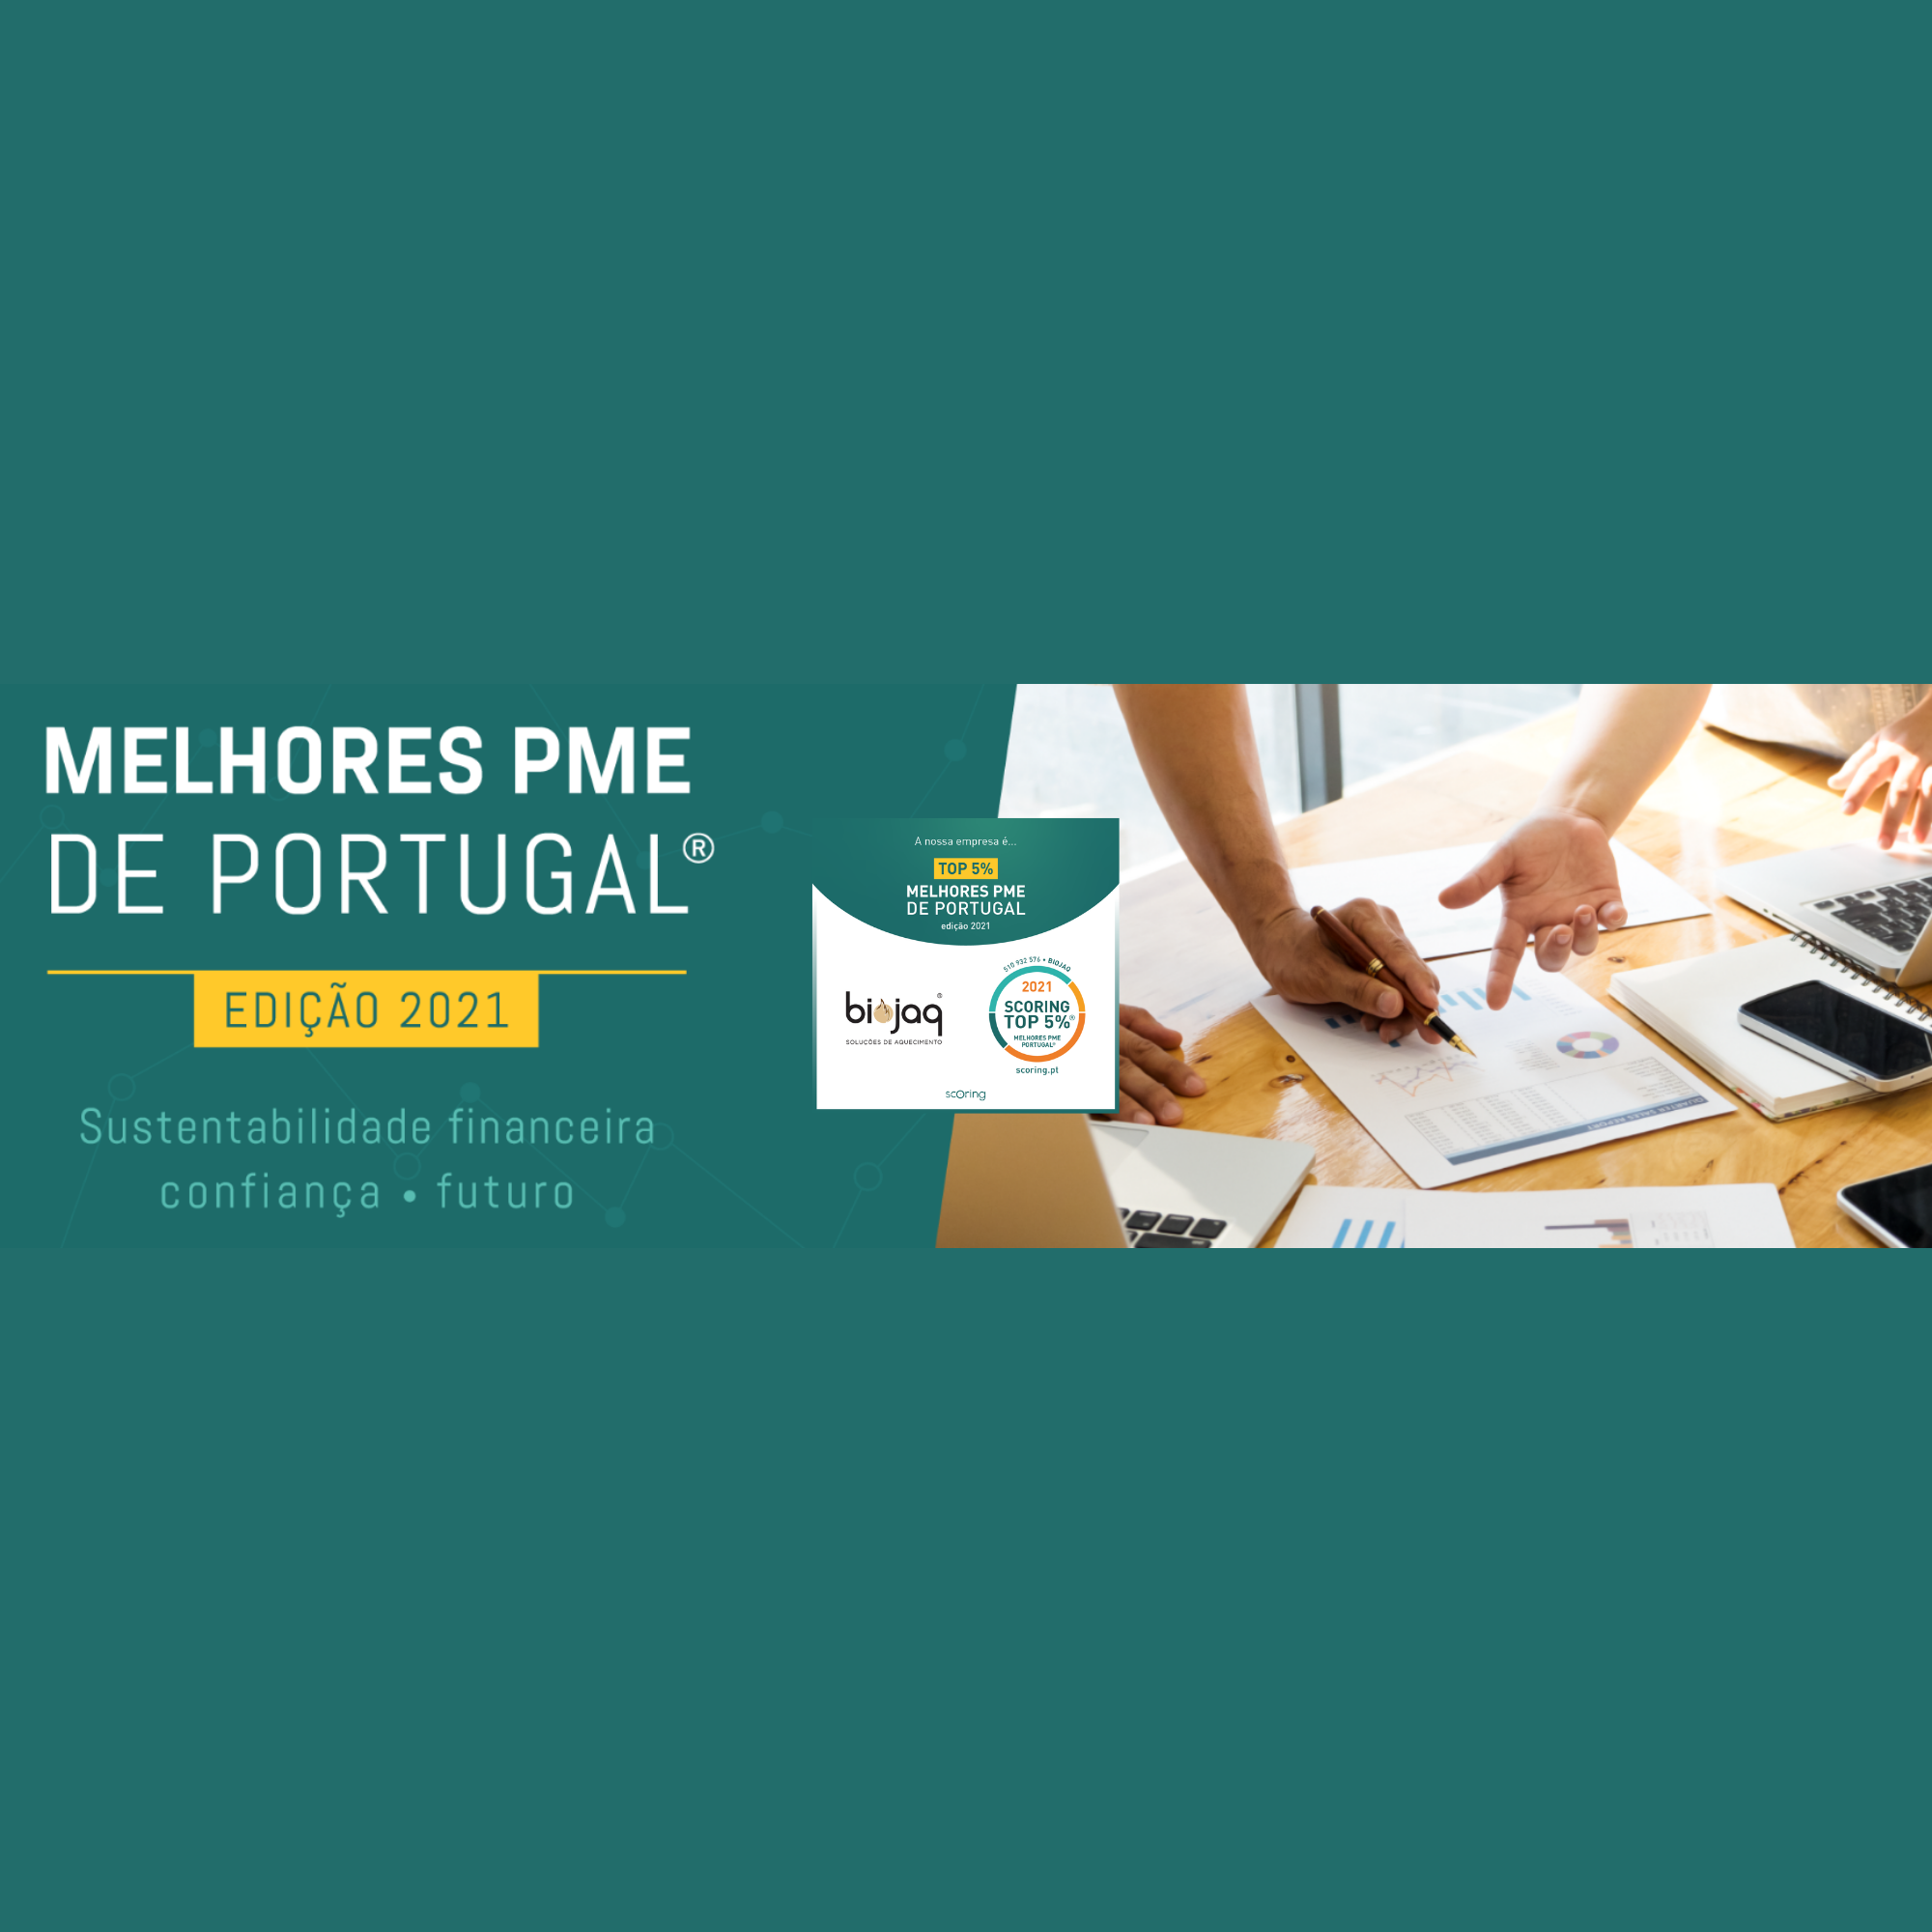 Melhores PME de Portugal